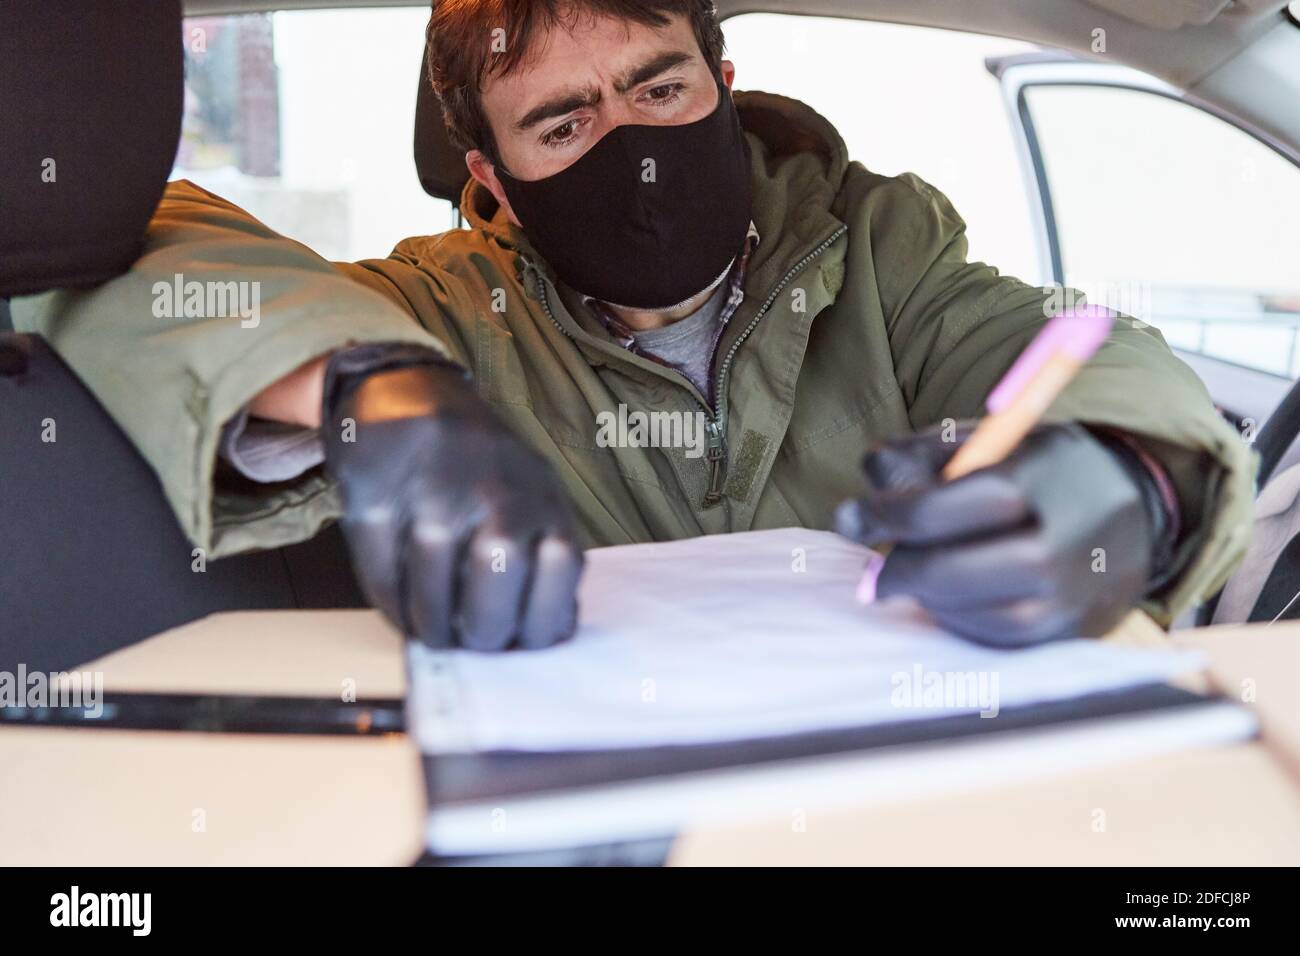 Lieferservice Paketzustellung Mann mit Gesichtsmaske prüft Lieferung Im Innenraum seines Fahrzeugs Stockfoto